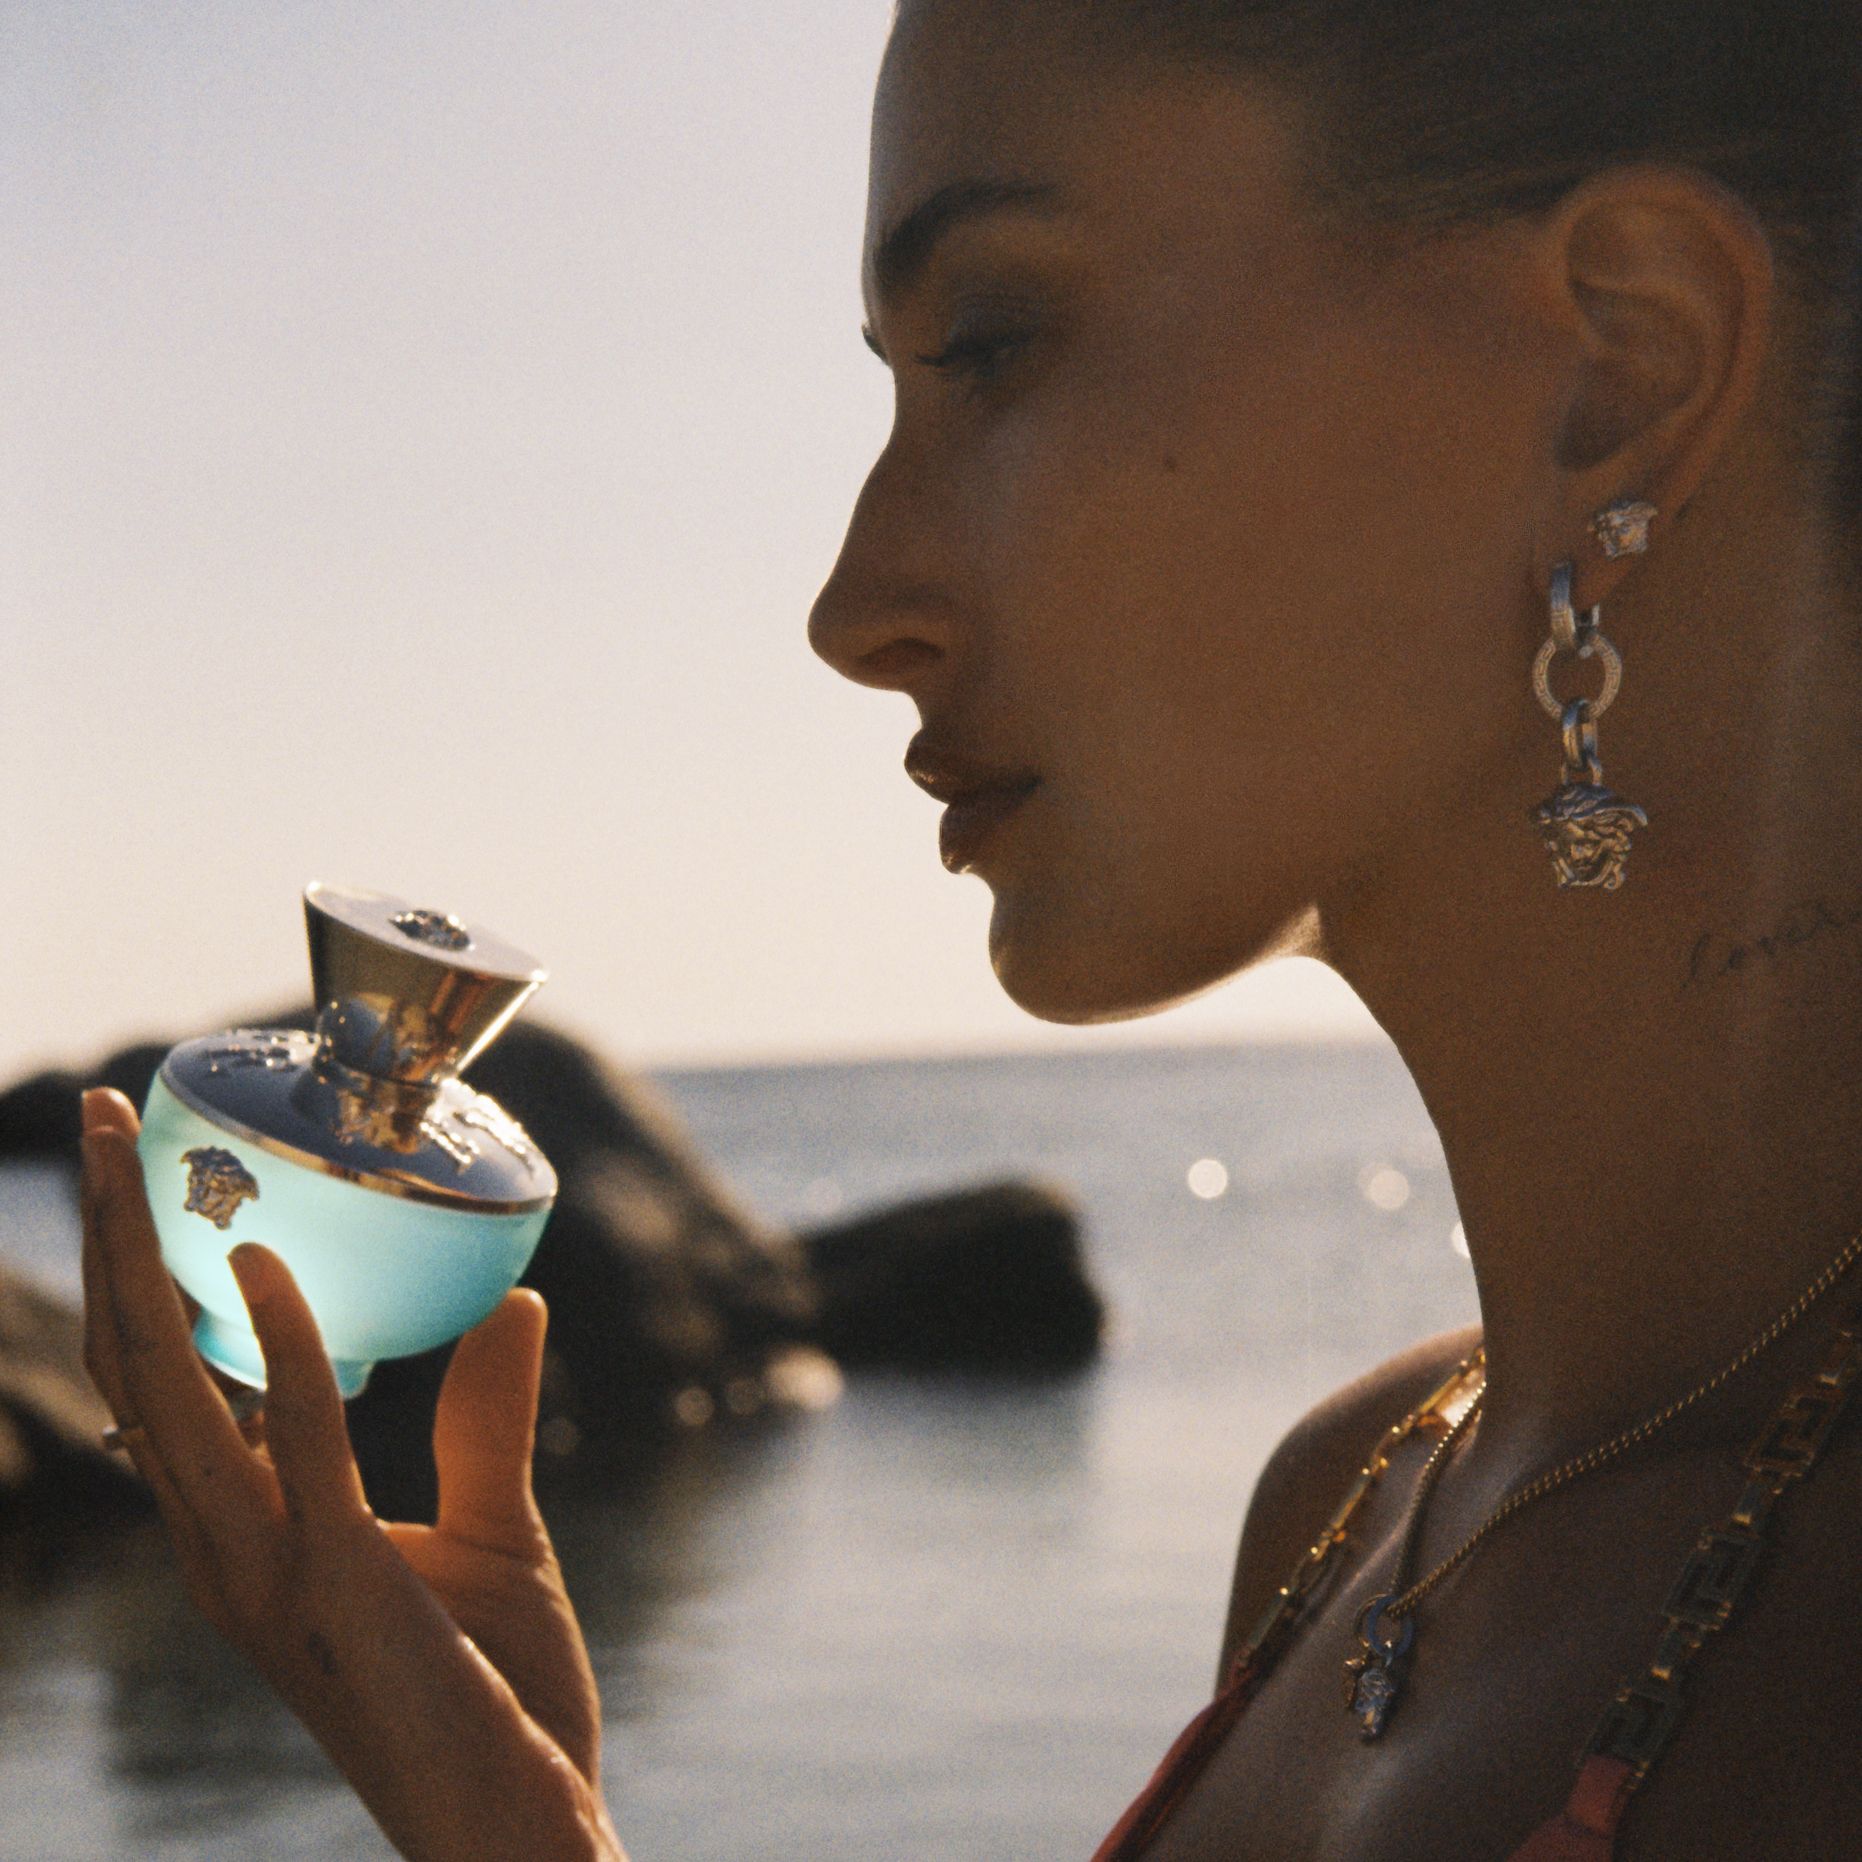 今年你應該擁有一款散發 渡假氛圍 的香水 全新versace狄倫淡藍女性淡香水用層次香調展現清新活力也帶你體驗 海洋的清涼